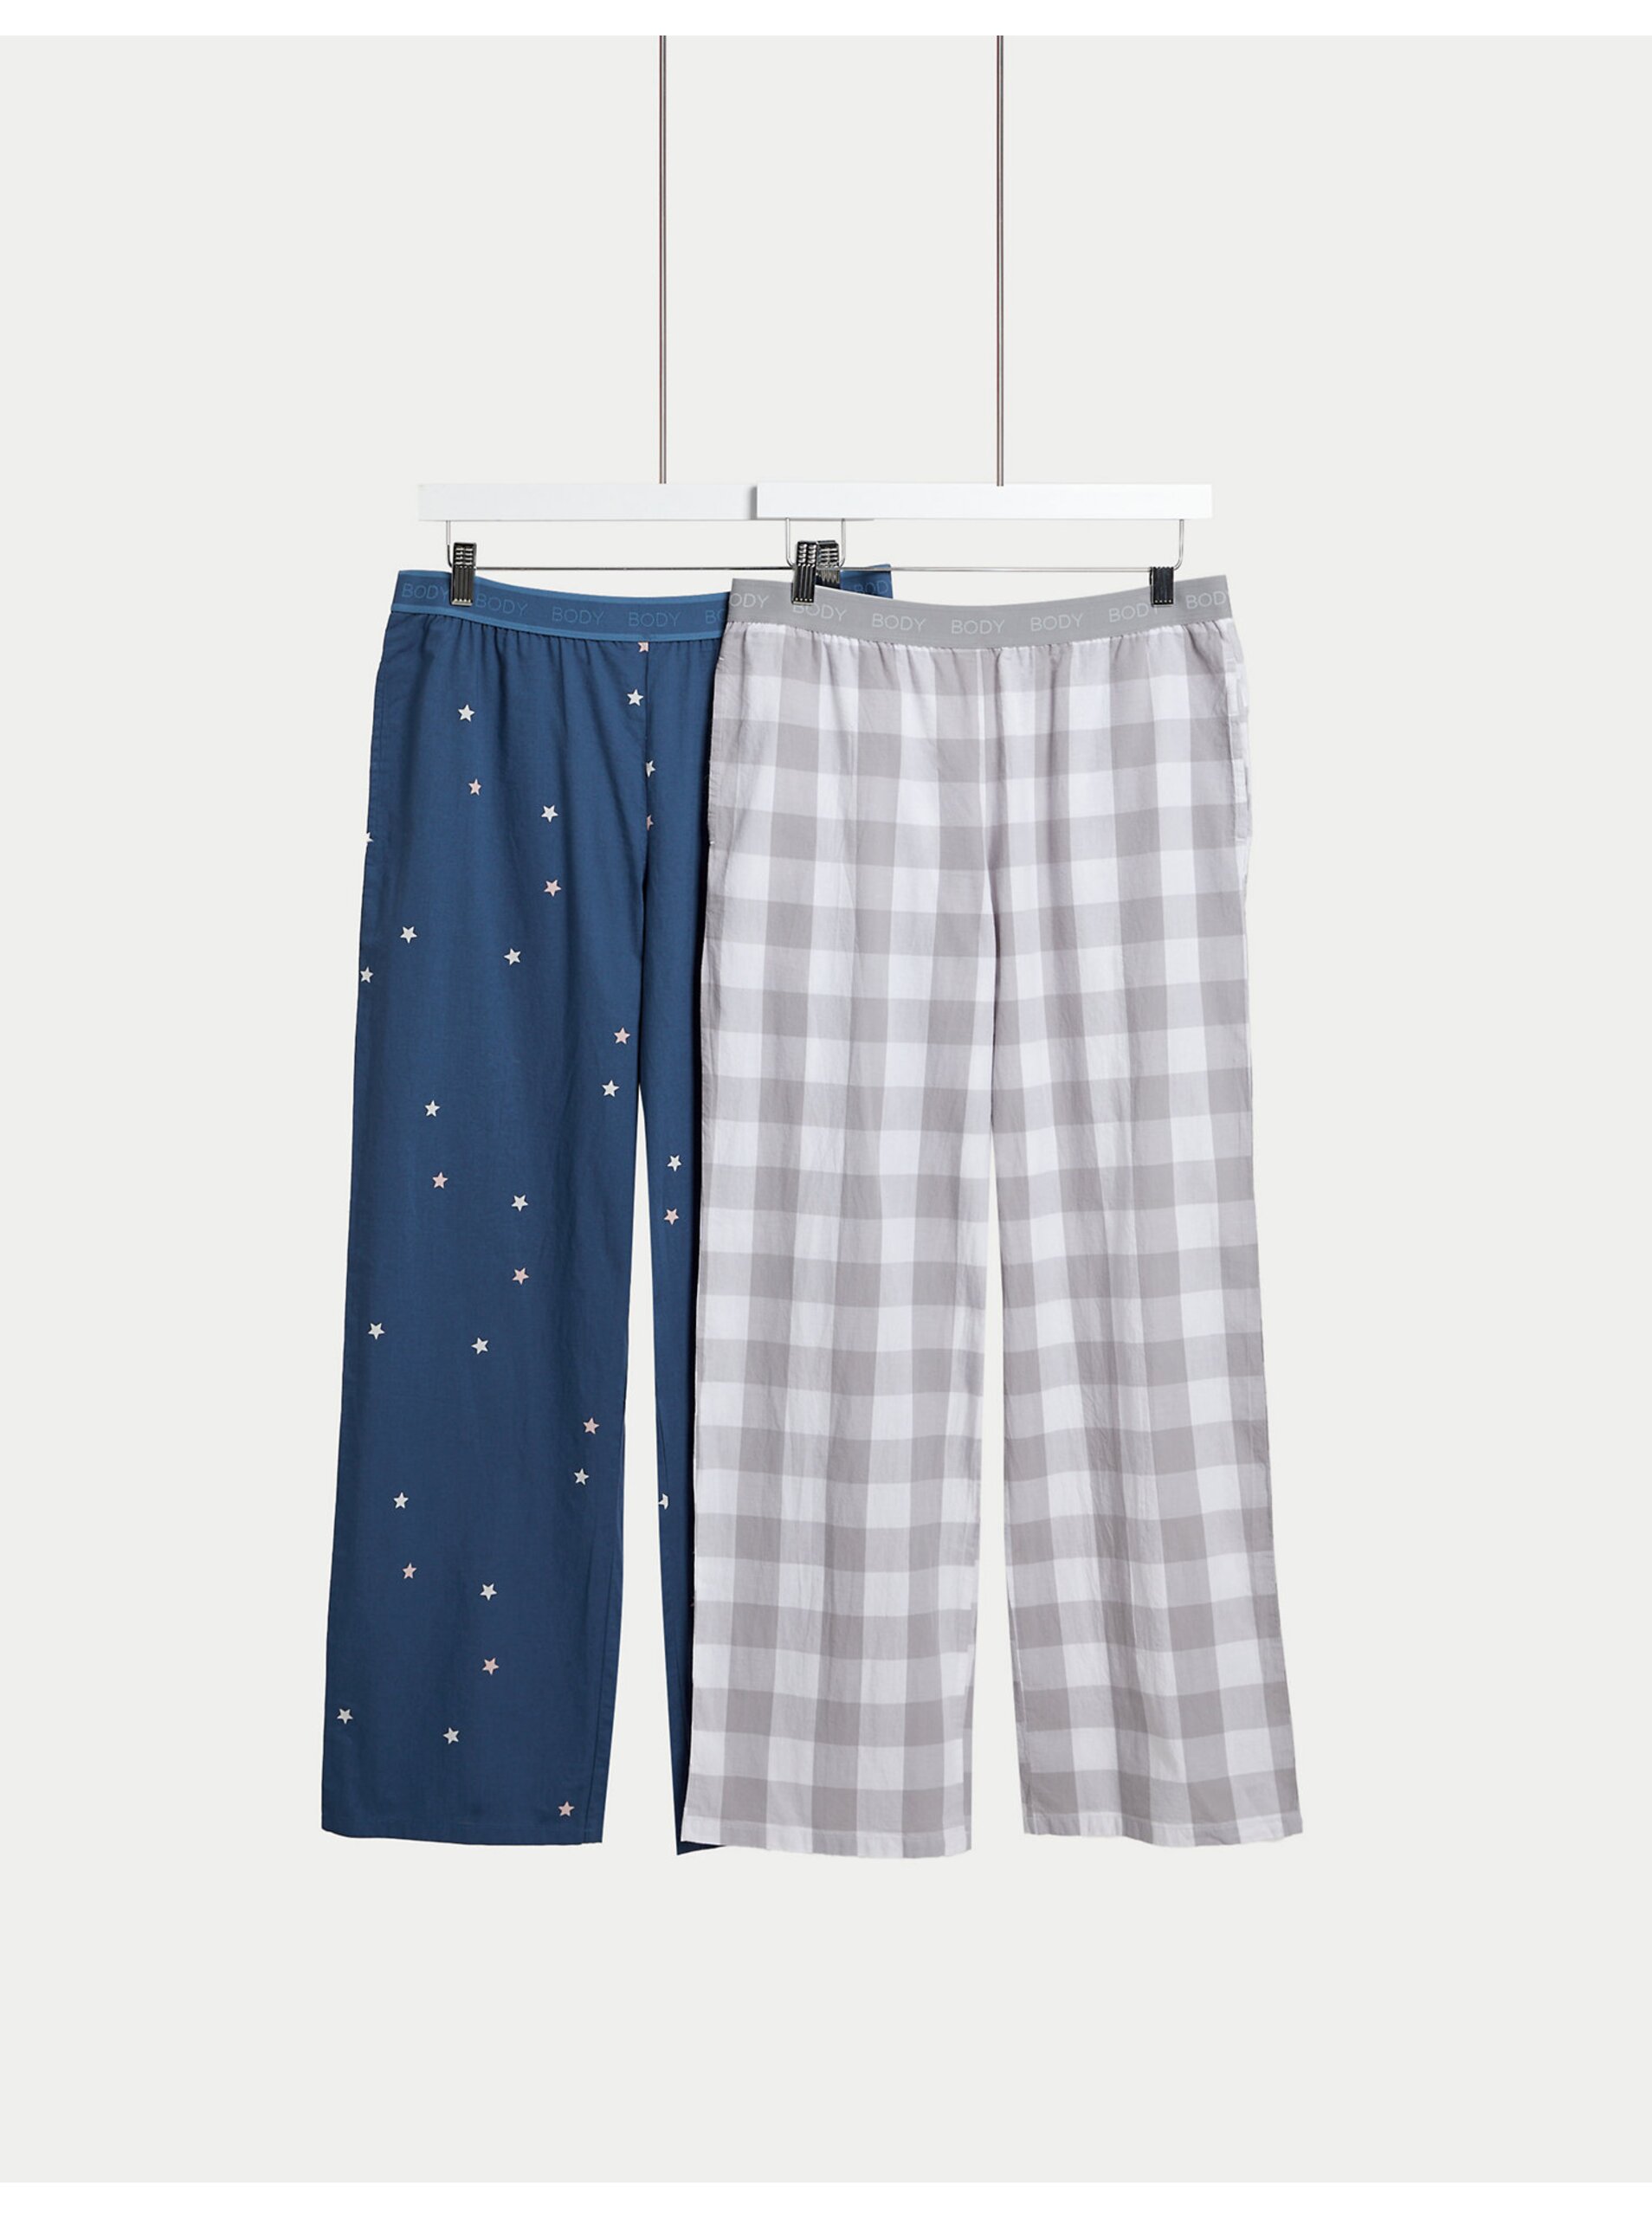 Lacno Súprava dvoch dámskych spodných dielov pyžamá v modrej a šedej farbe Marks & Spencer